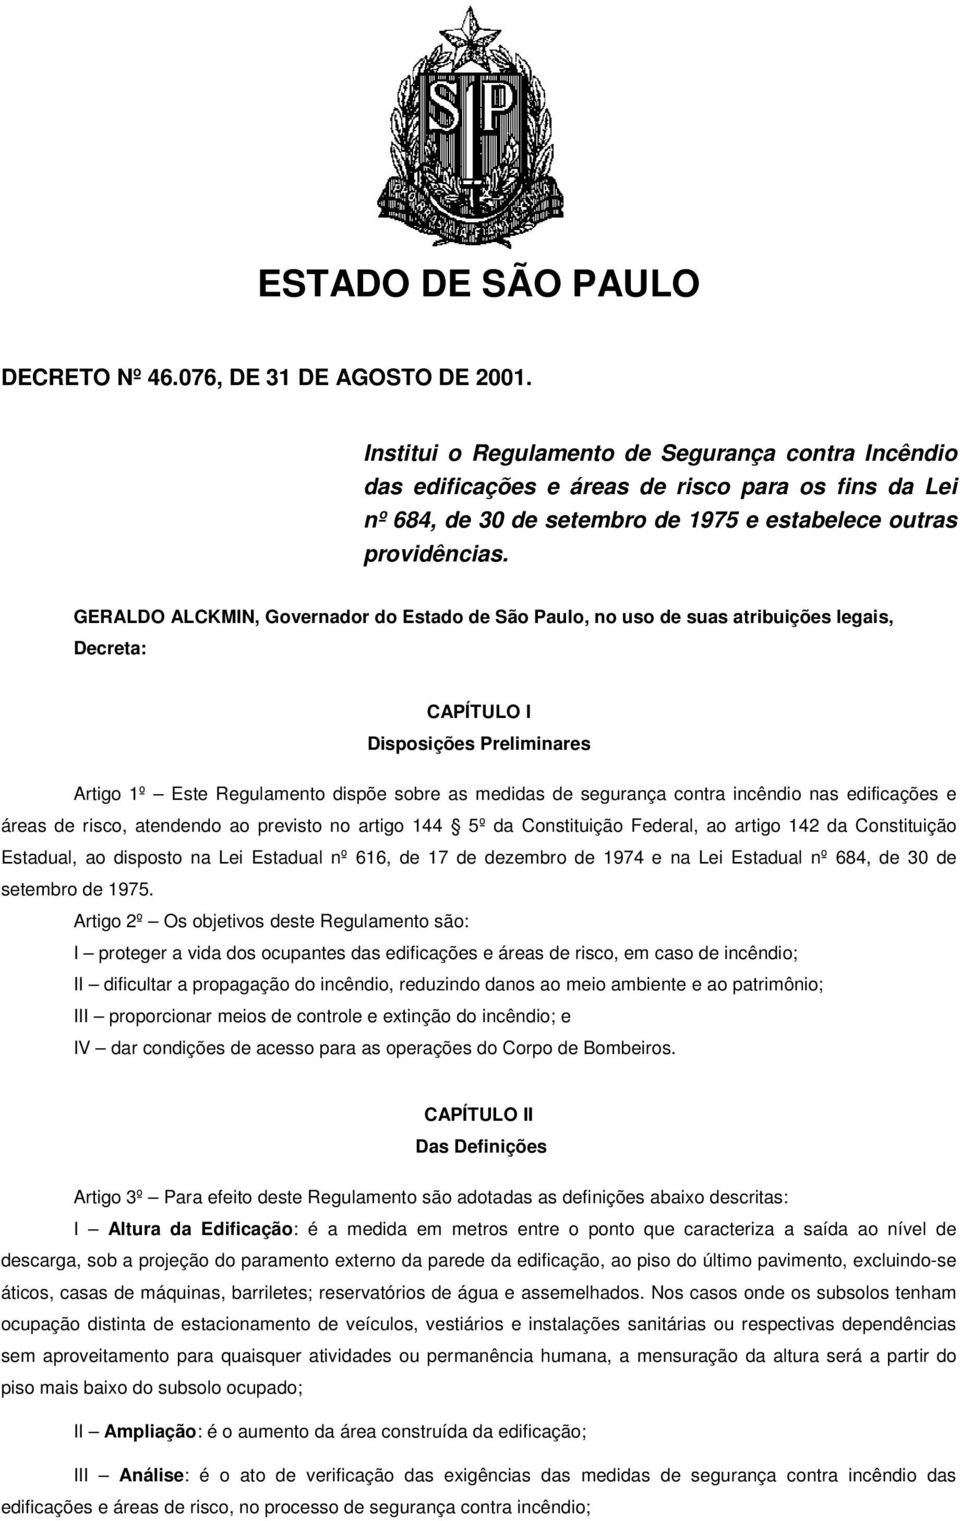 GERALDO ALCKMIN, Governador do Estado de São Paulo, no uso de suas atribuições legais, Decreta: CAPÍTULO I Disposições Preliminares Artigo 1º Este Regulamento dispõe sobre as medidas de segurança